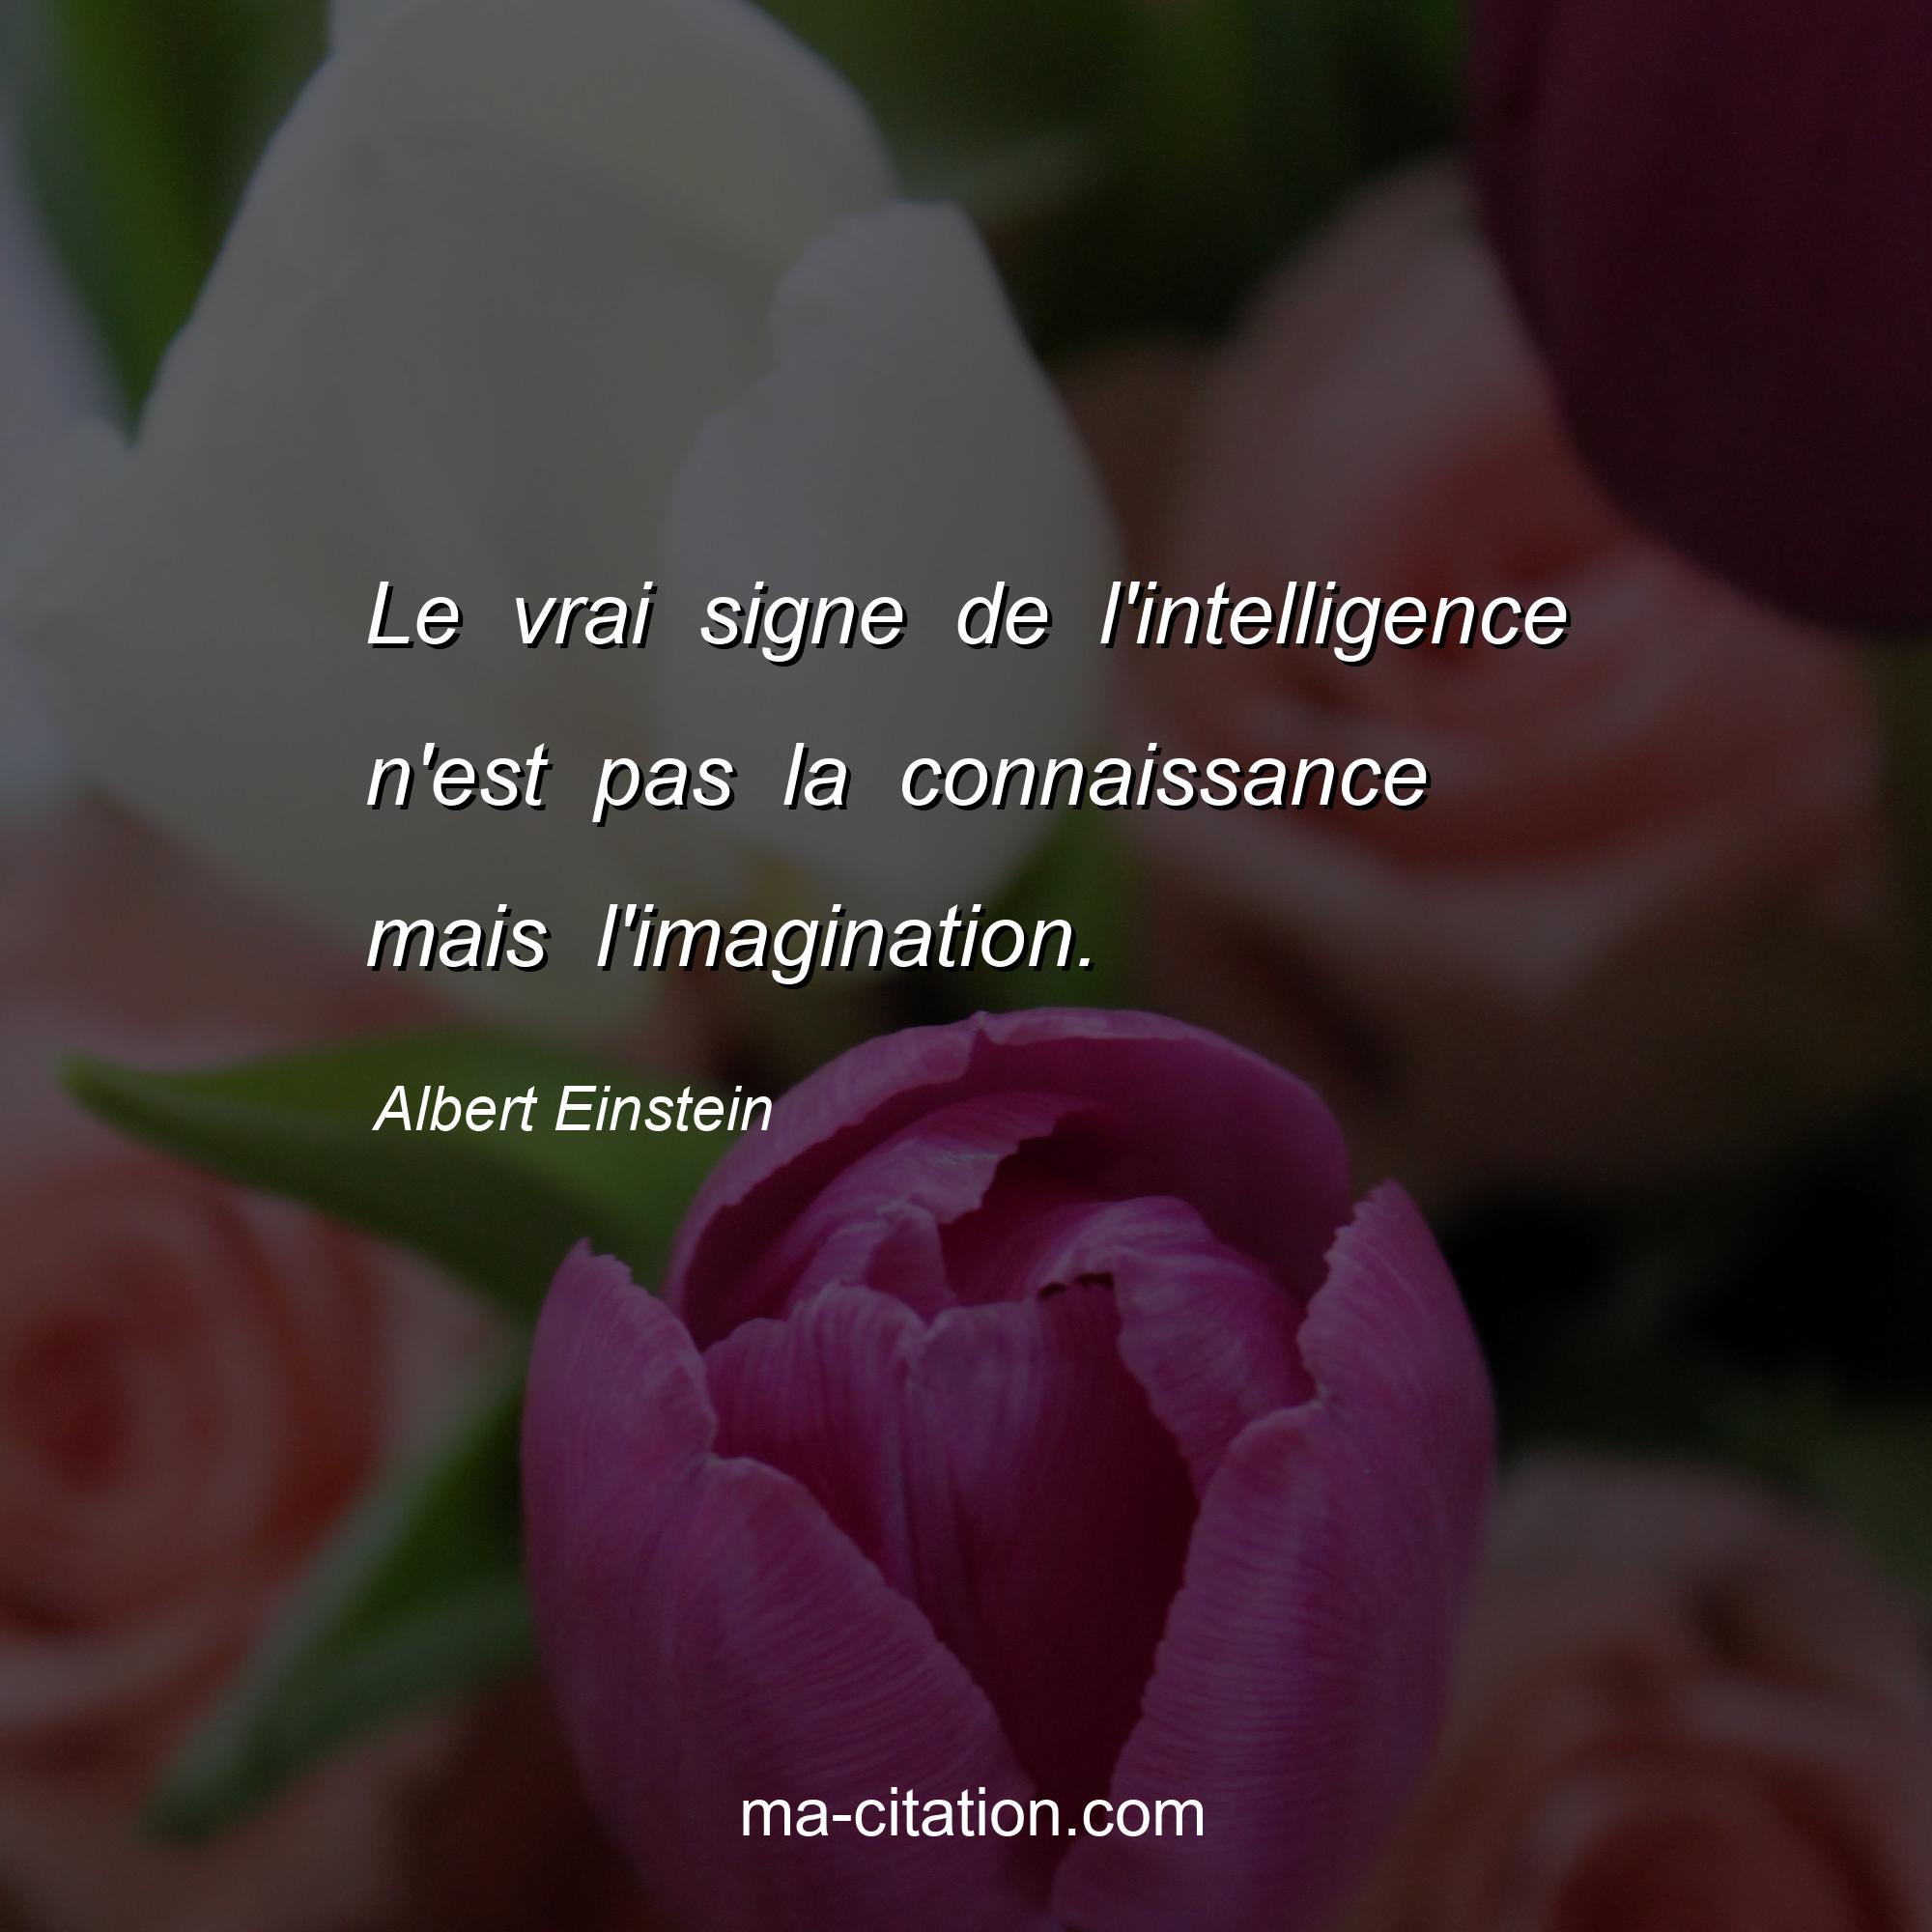 Albert Einstein : Le vrai signe de l'intelligence n'est pas la connaissance mais l'imagination.